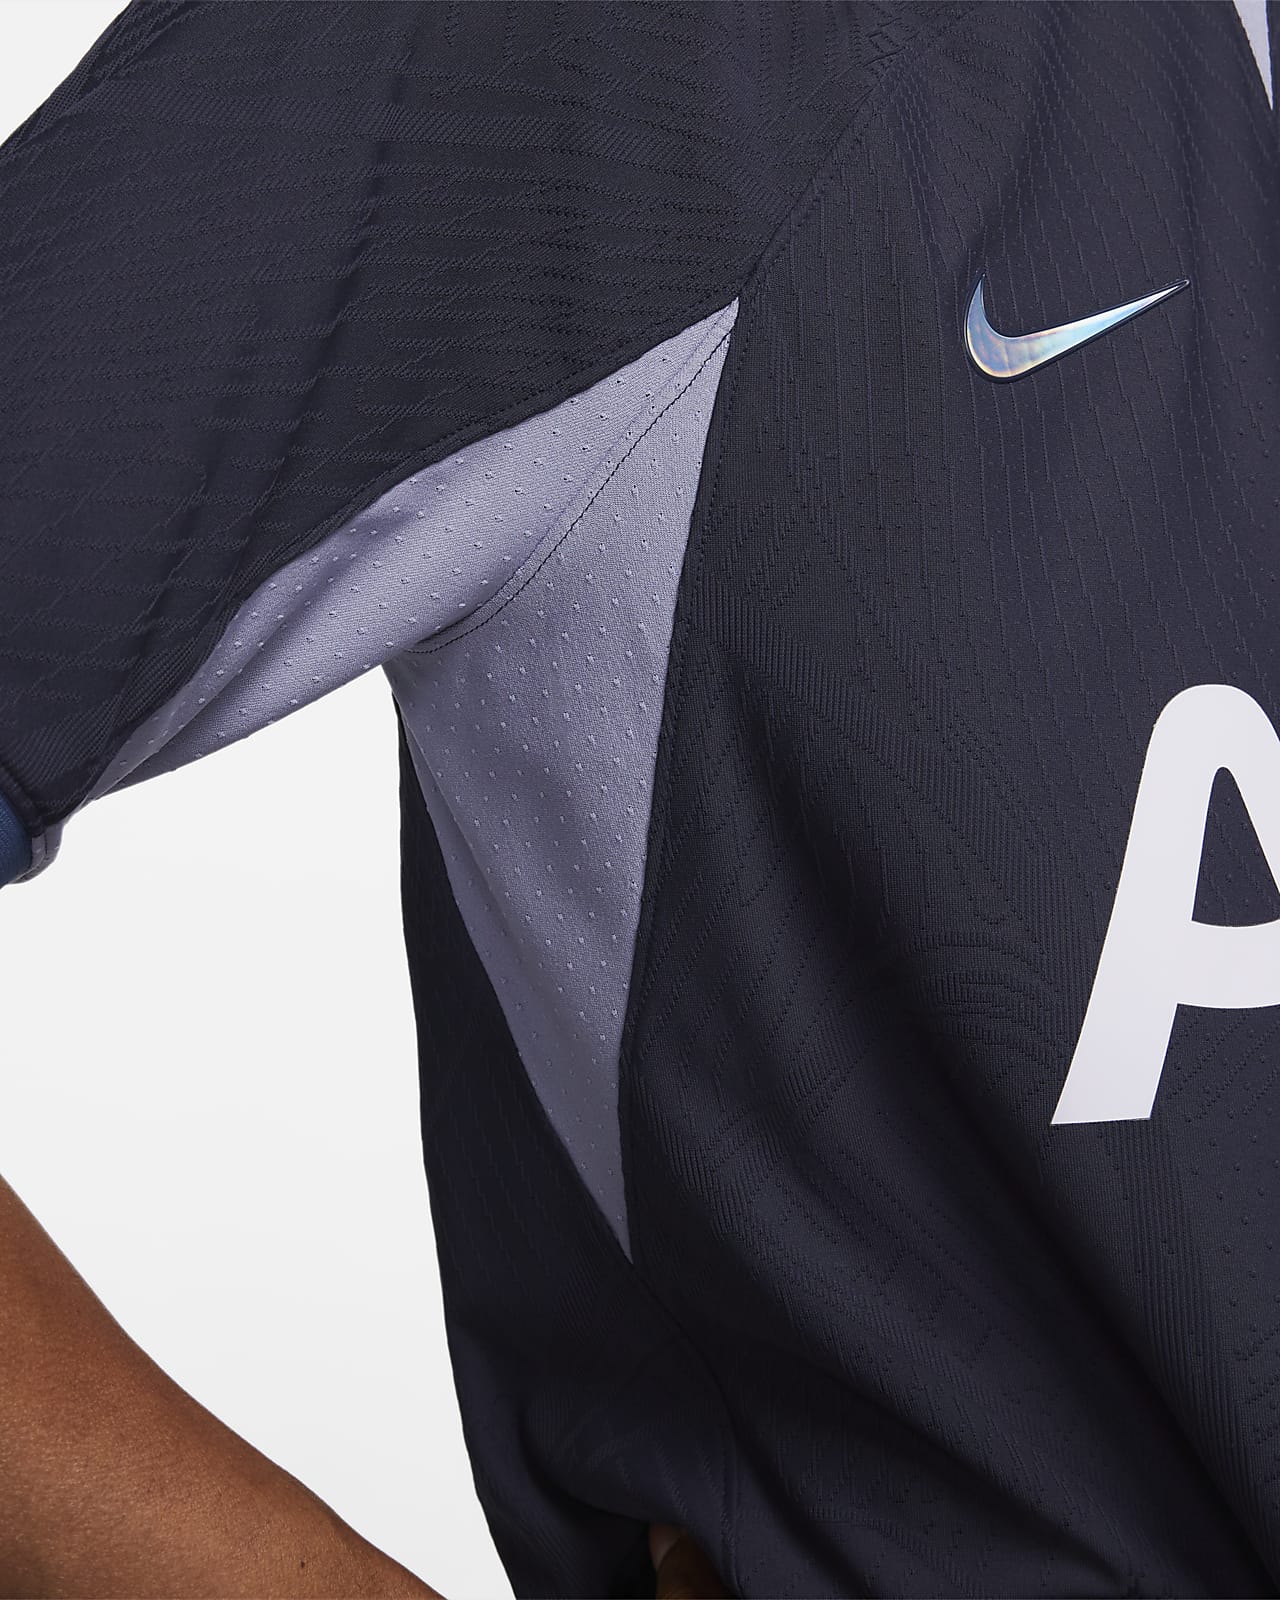 Nike Tottenham Hotspur Stadium Air Max Men's Football Shirt Medium